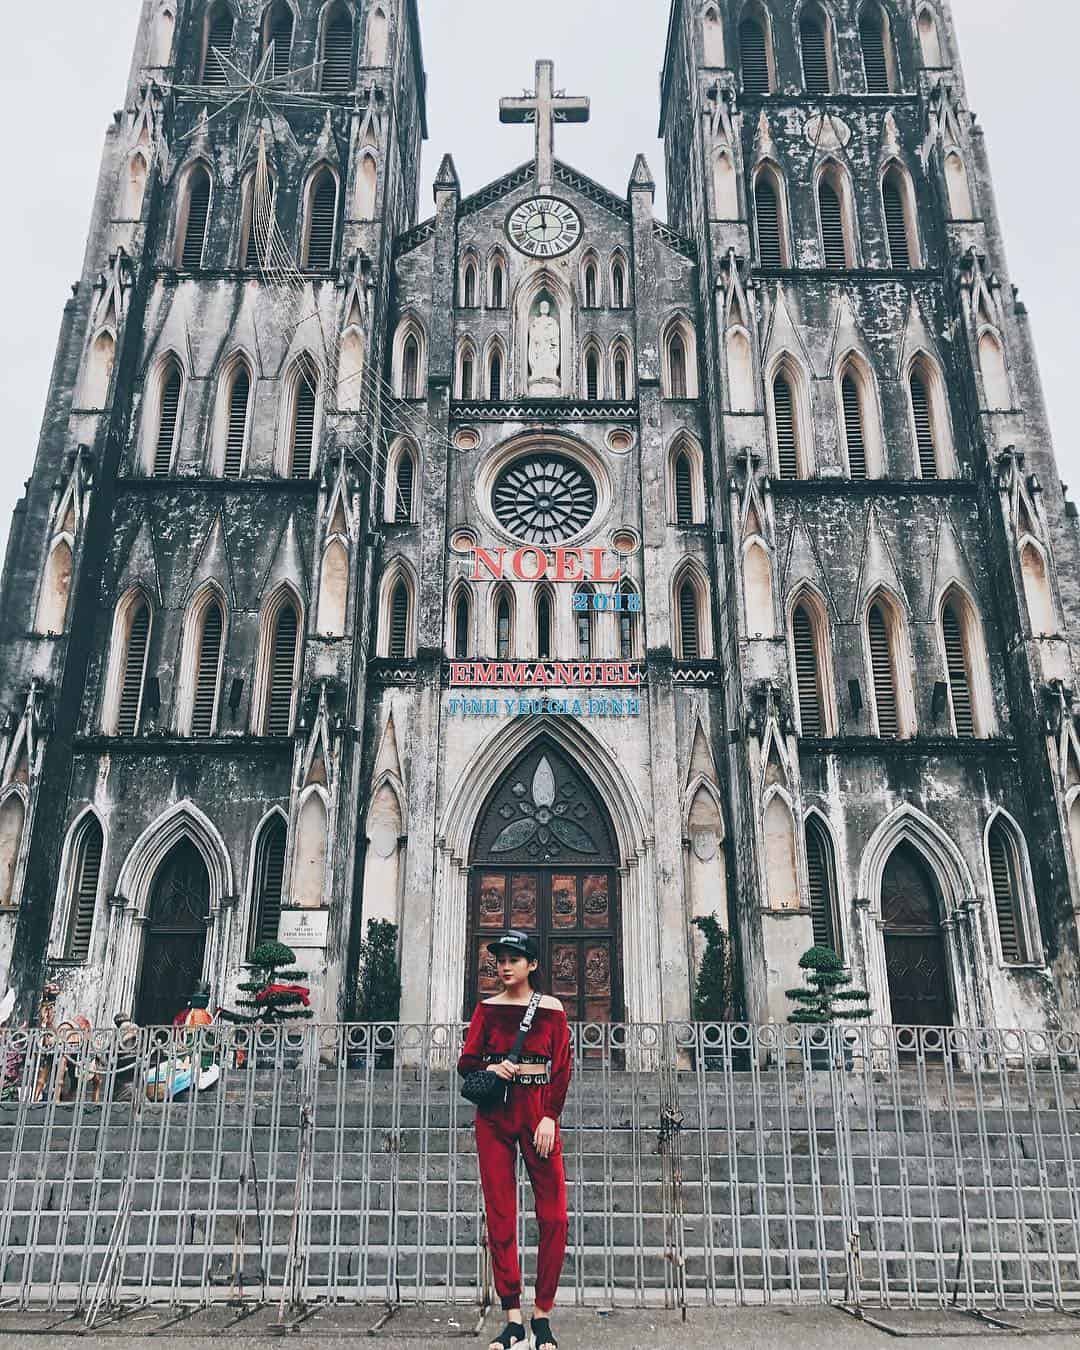 Joseph's Cathedral, Hanoi